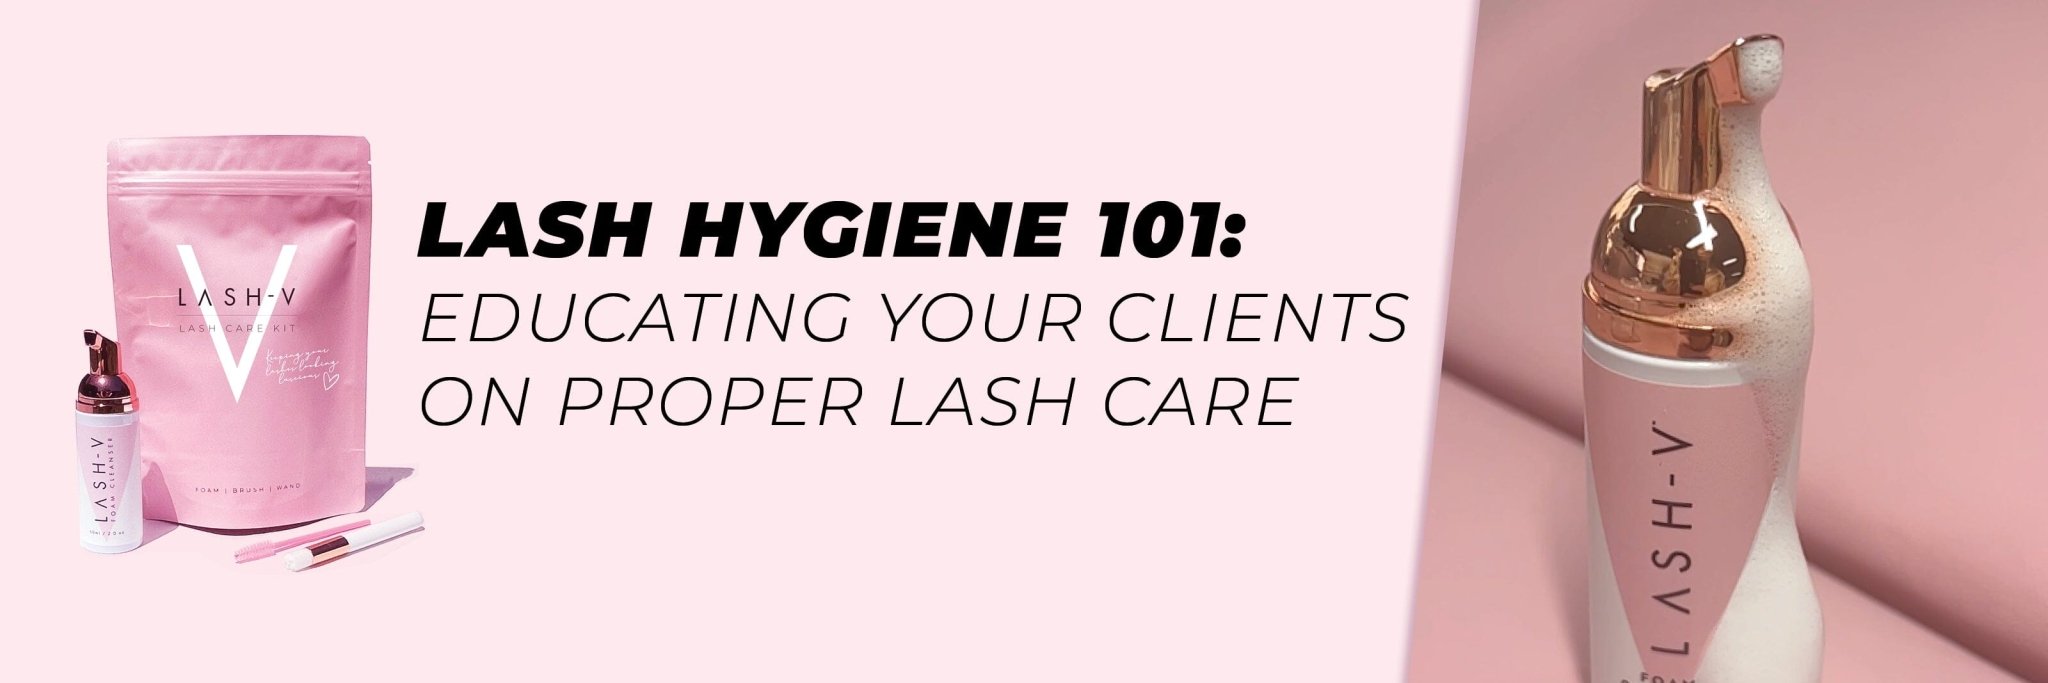 LASH HYGIENE 101 – Educating Your Clients On Proper Lash Care - LASH V